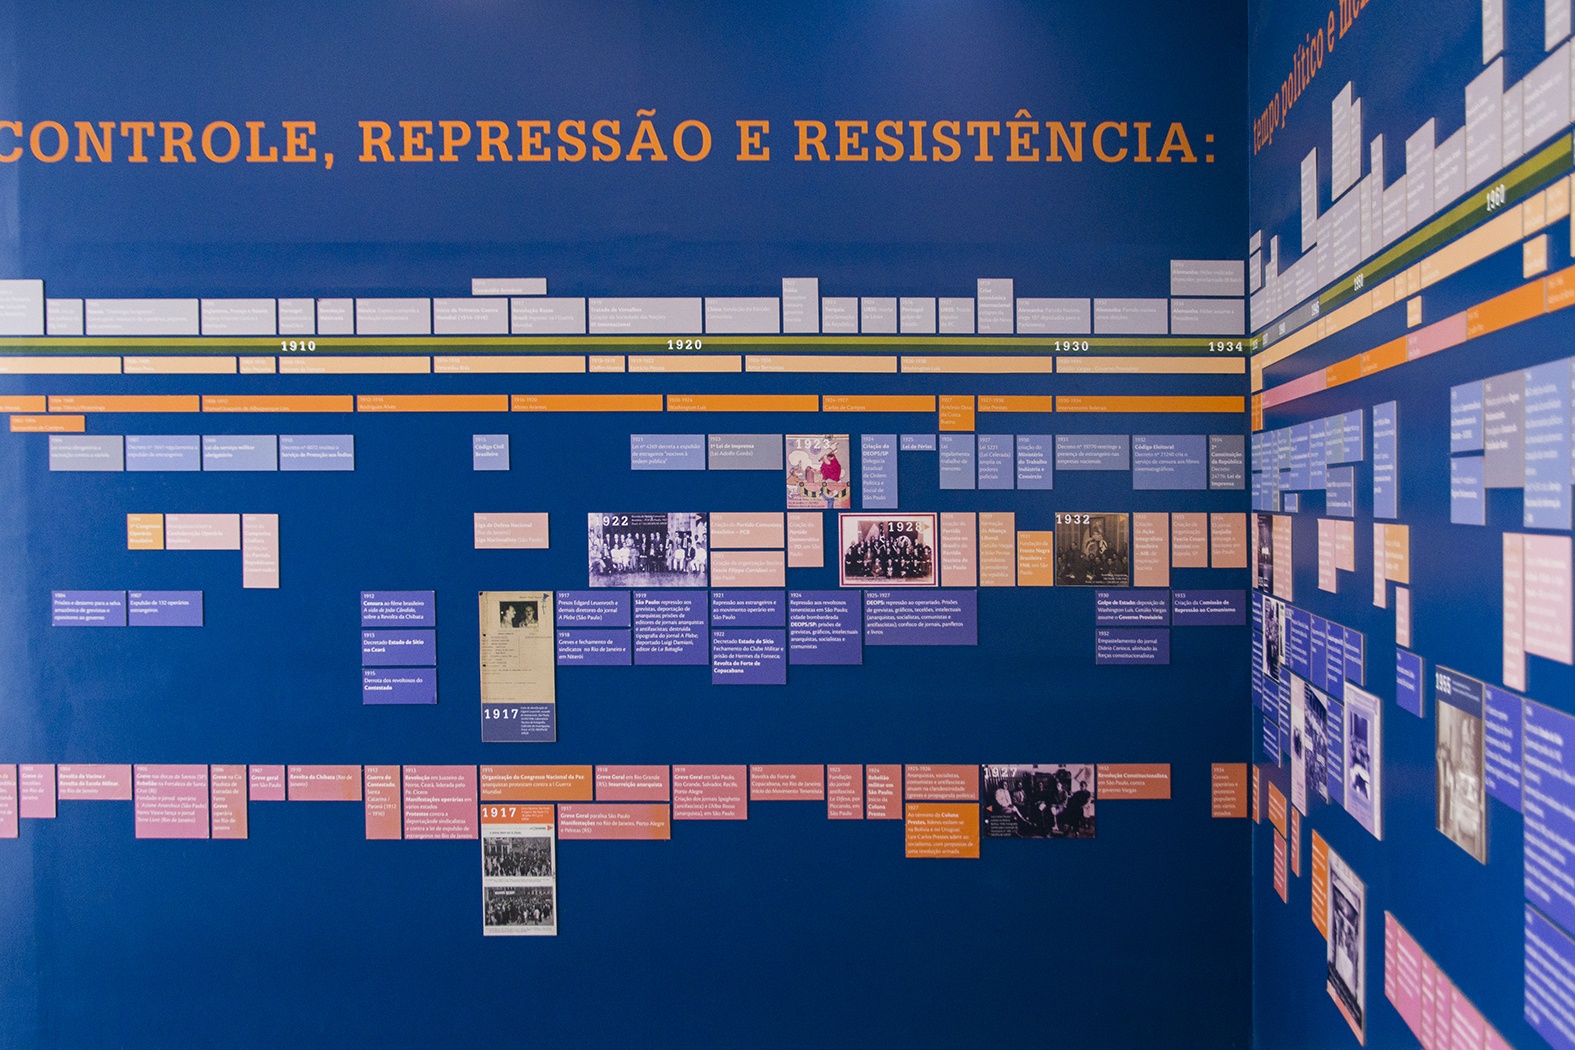 Foto colorida de espaço expositivo com paredes azuis. Vemos à esquerda, no alto, escrito em amarelo, a frase "Controle, repressão e resistência". Abaixo há uma linha do tempo com placas azuis, pretas e laranjas que contém fotos e informações escritas sobre eventos relacionados ao Brasil durante os anos de 1889 a 2008.